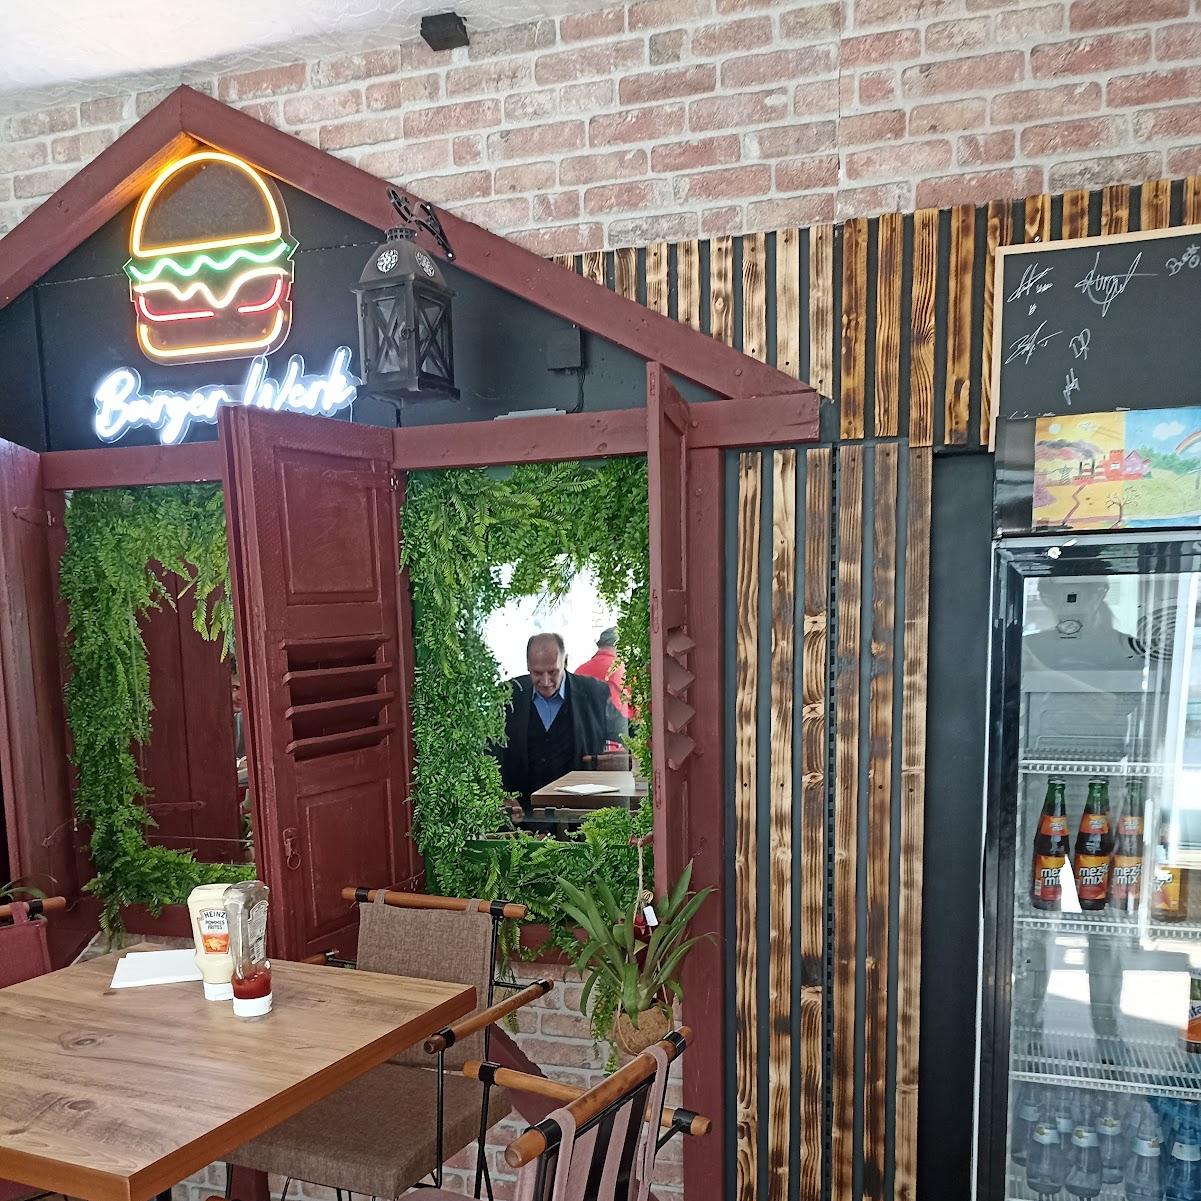 Restaurant "Burger Werk" in Eppingen